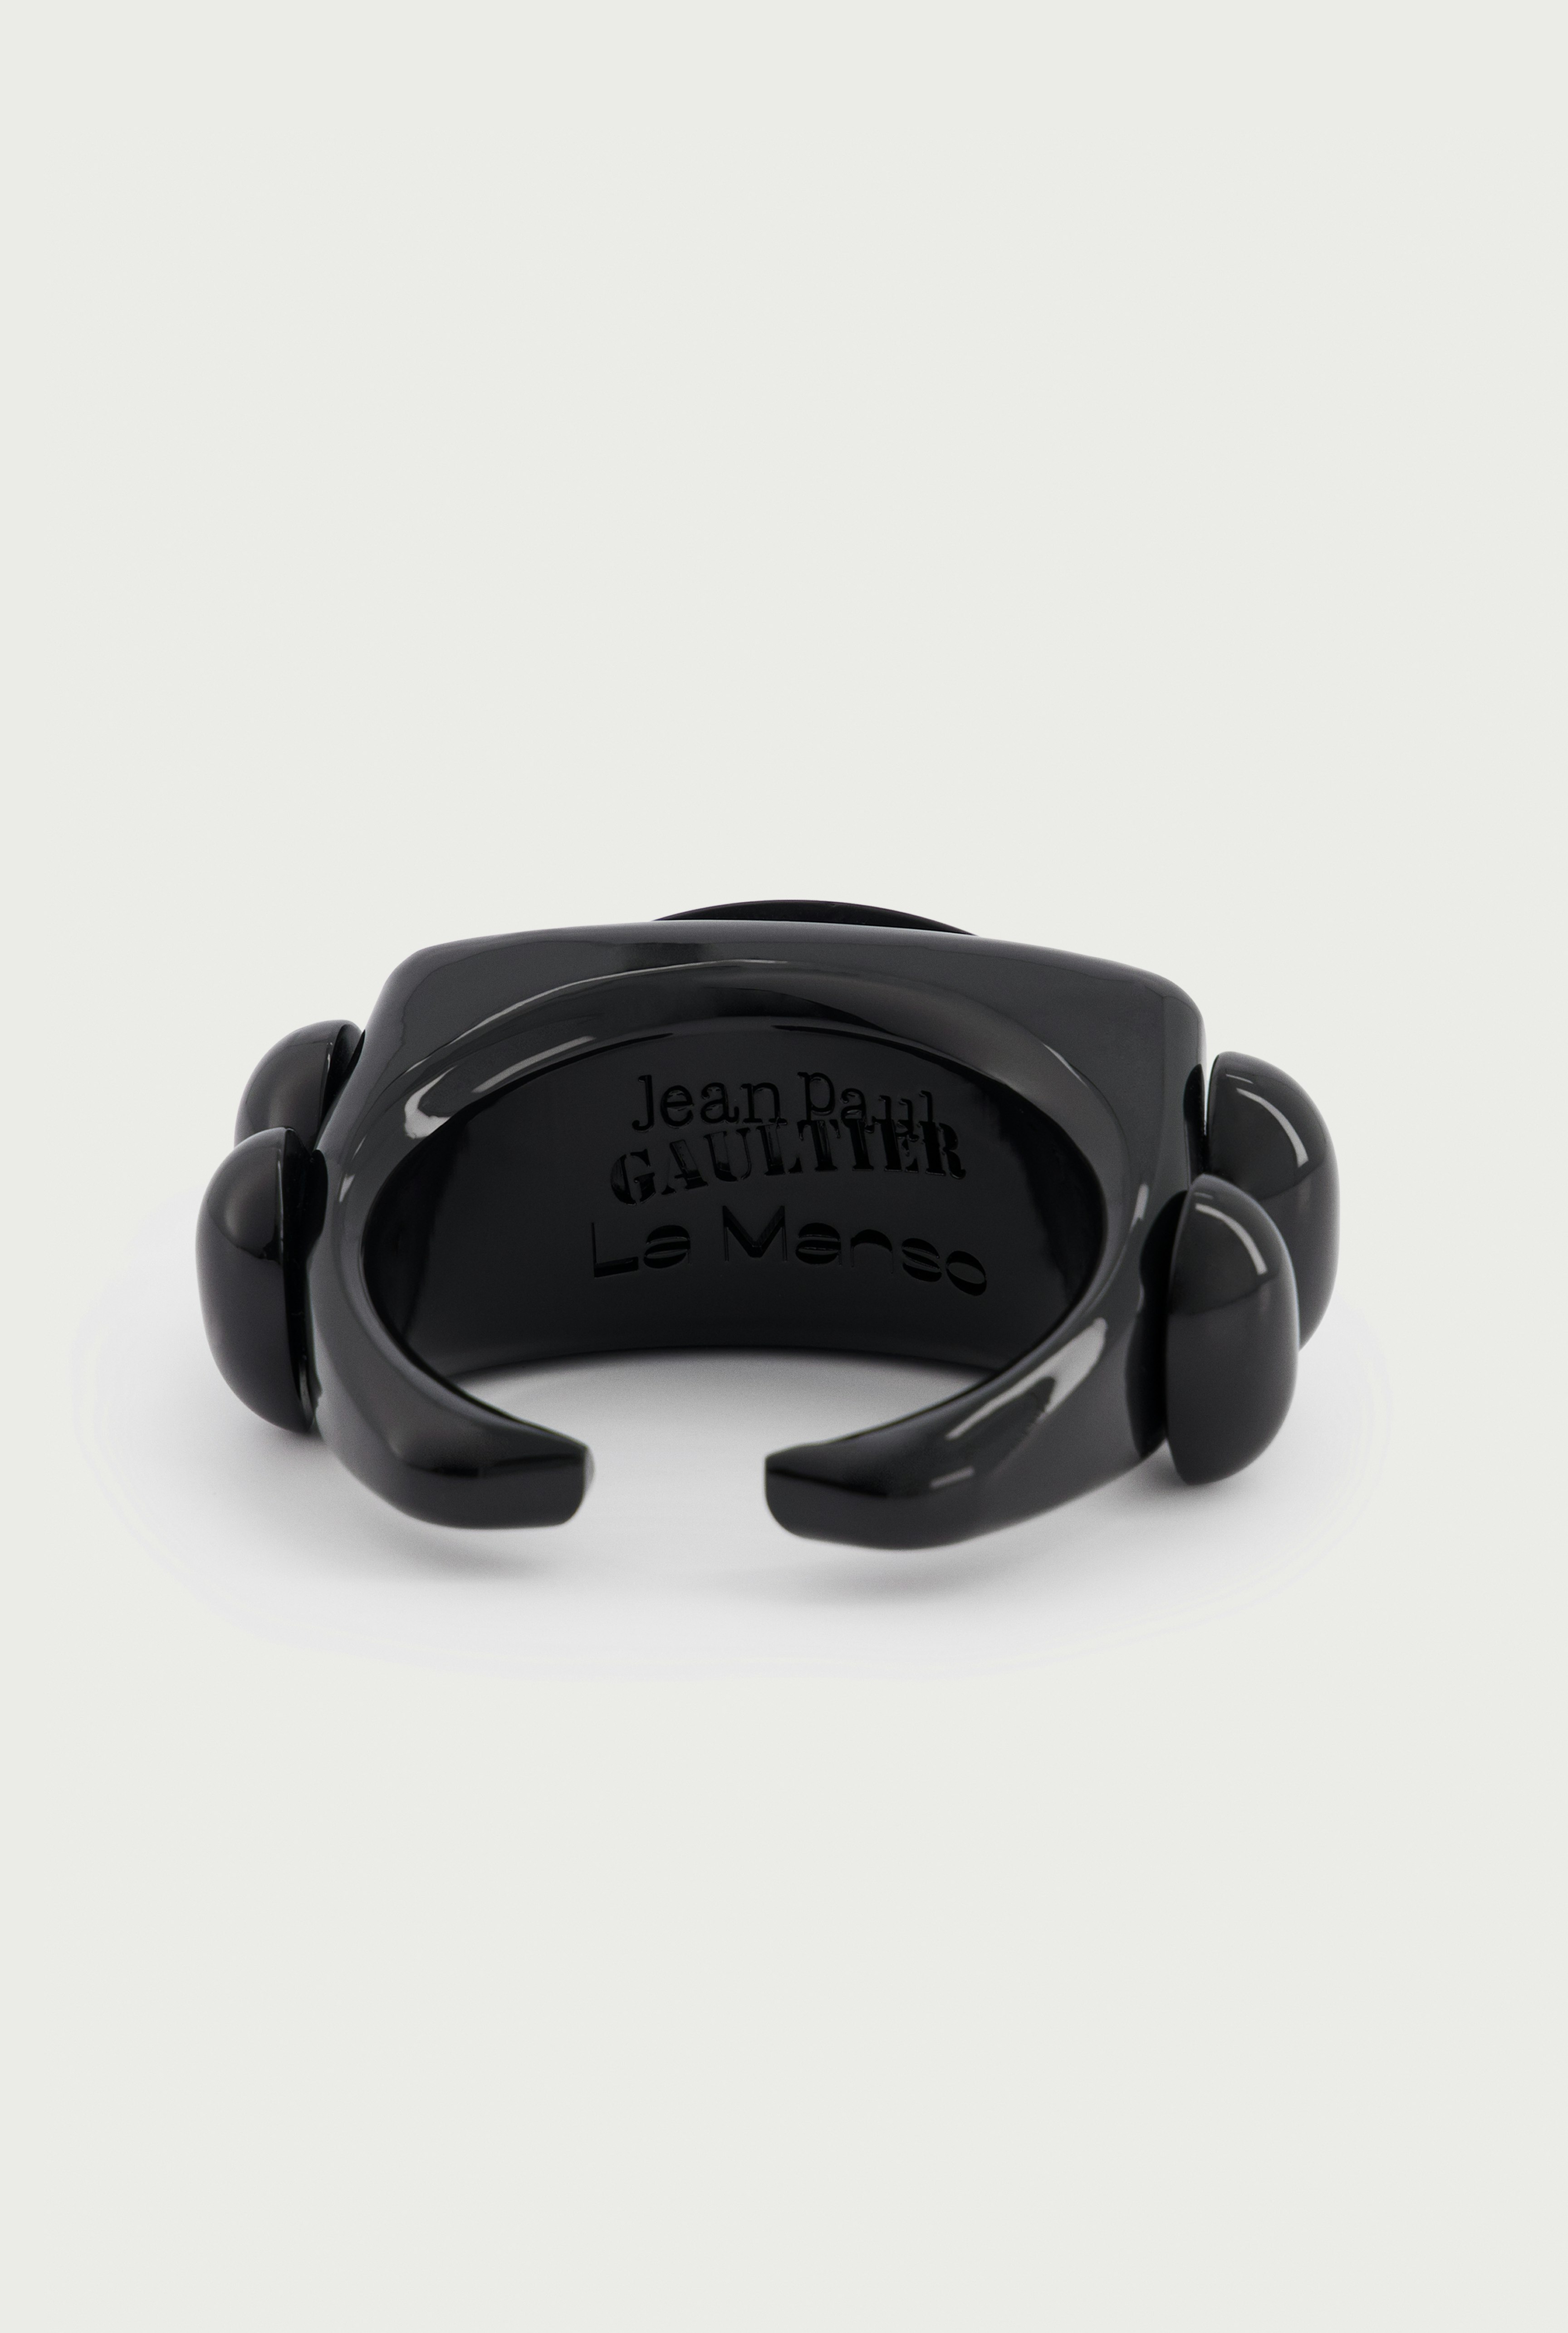 The Black Square Bracelet Jean Paul Gaultier x La Manso